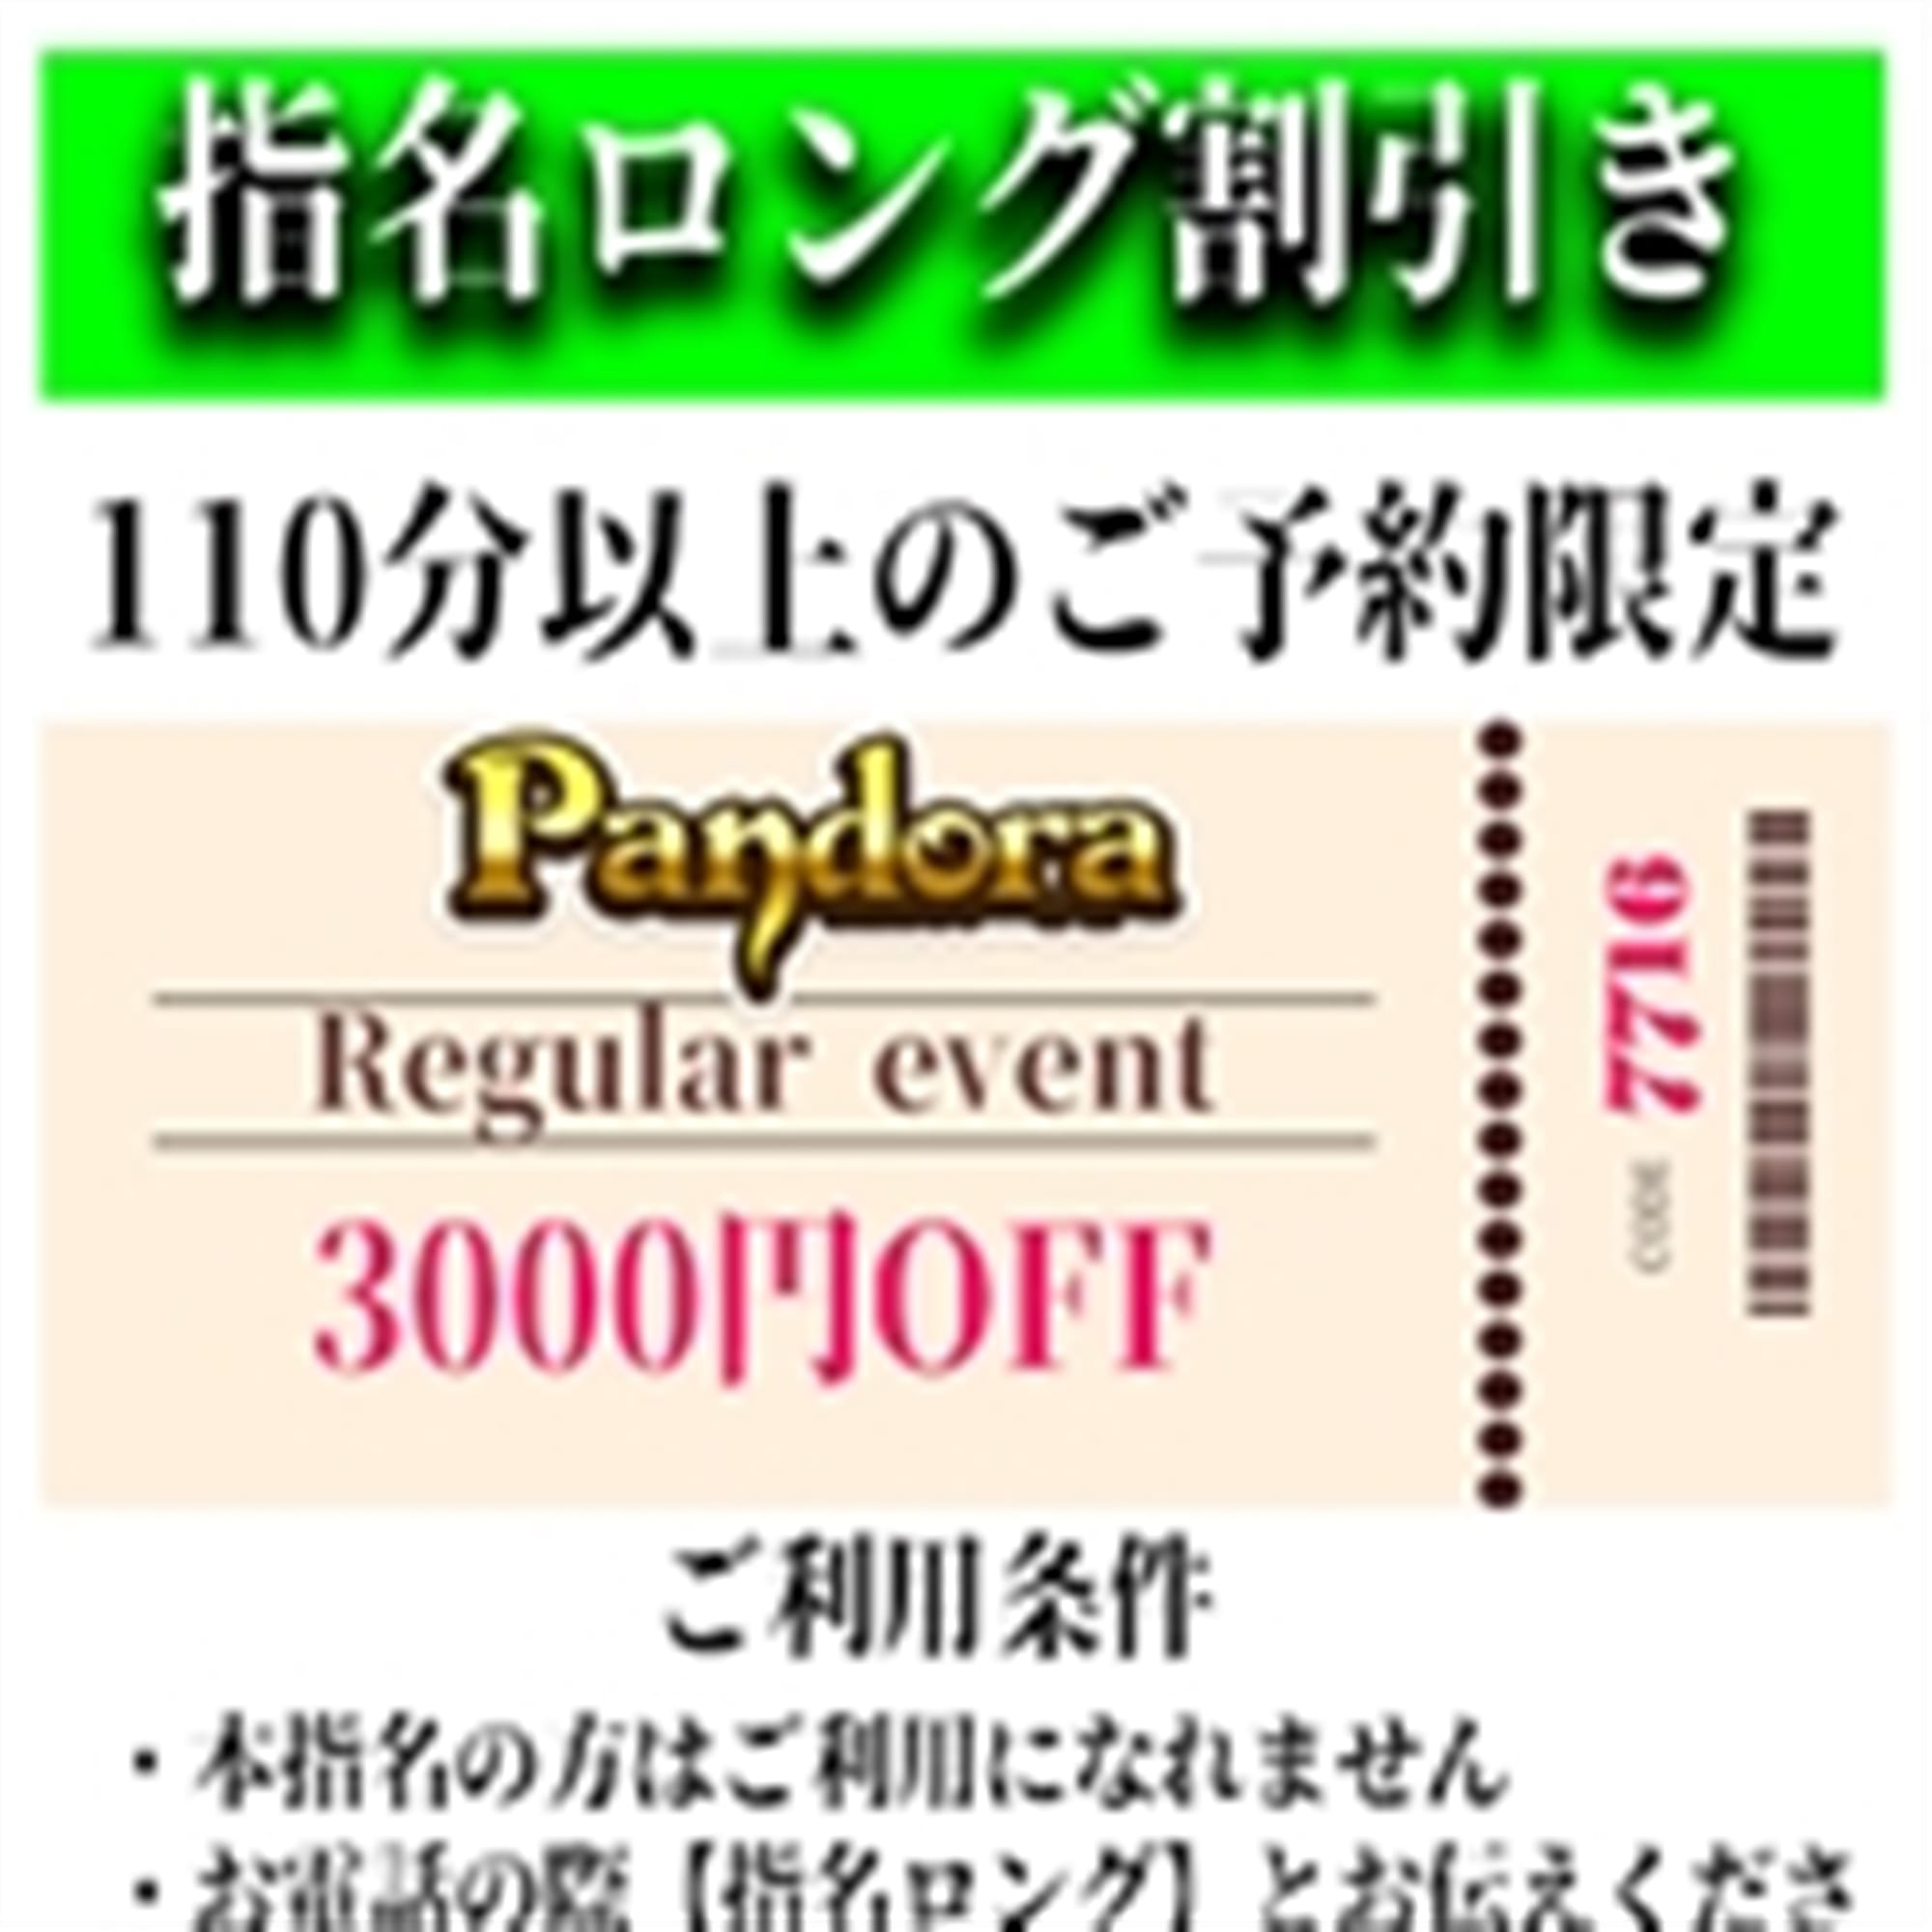 「ご指名のお客様も遊べるロングコース割引」04/20(土) 07:52 | Pandora(パンドラ)新潟のお得なニュース